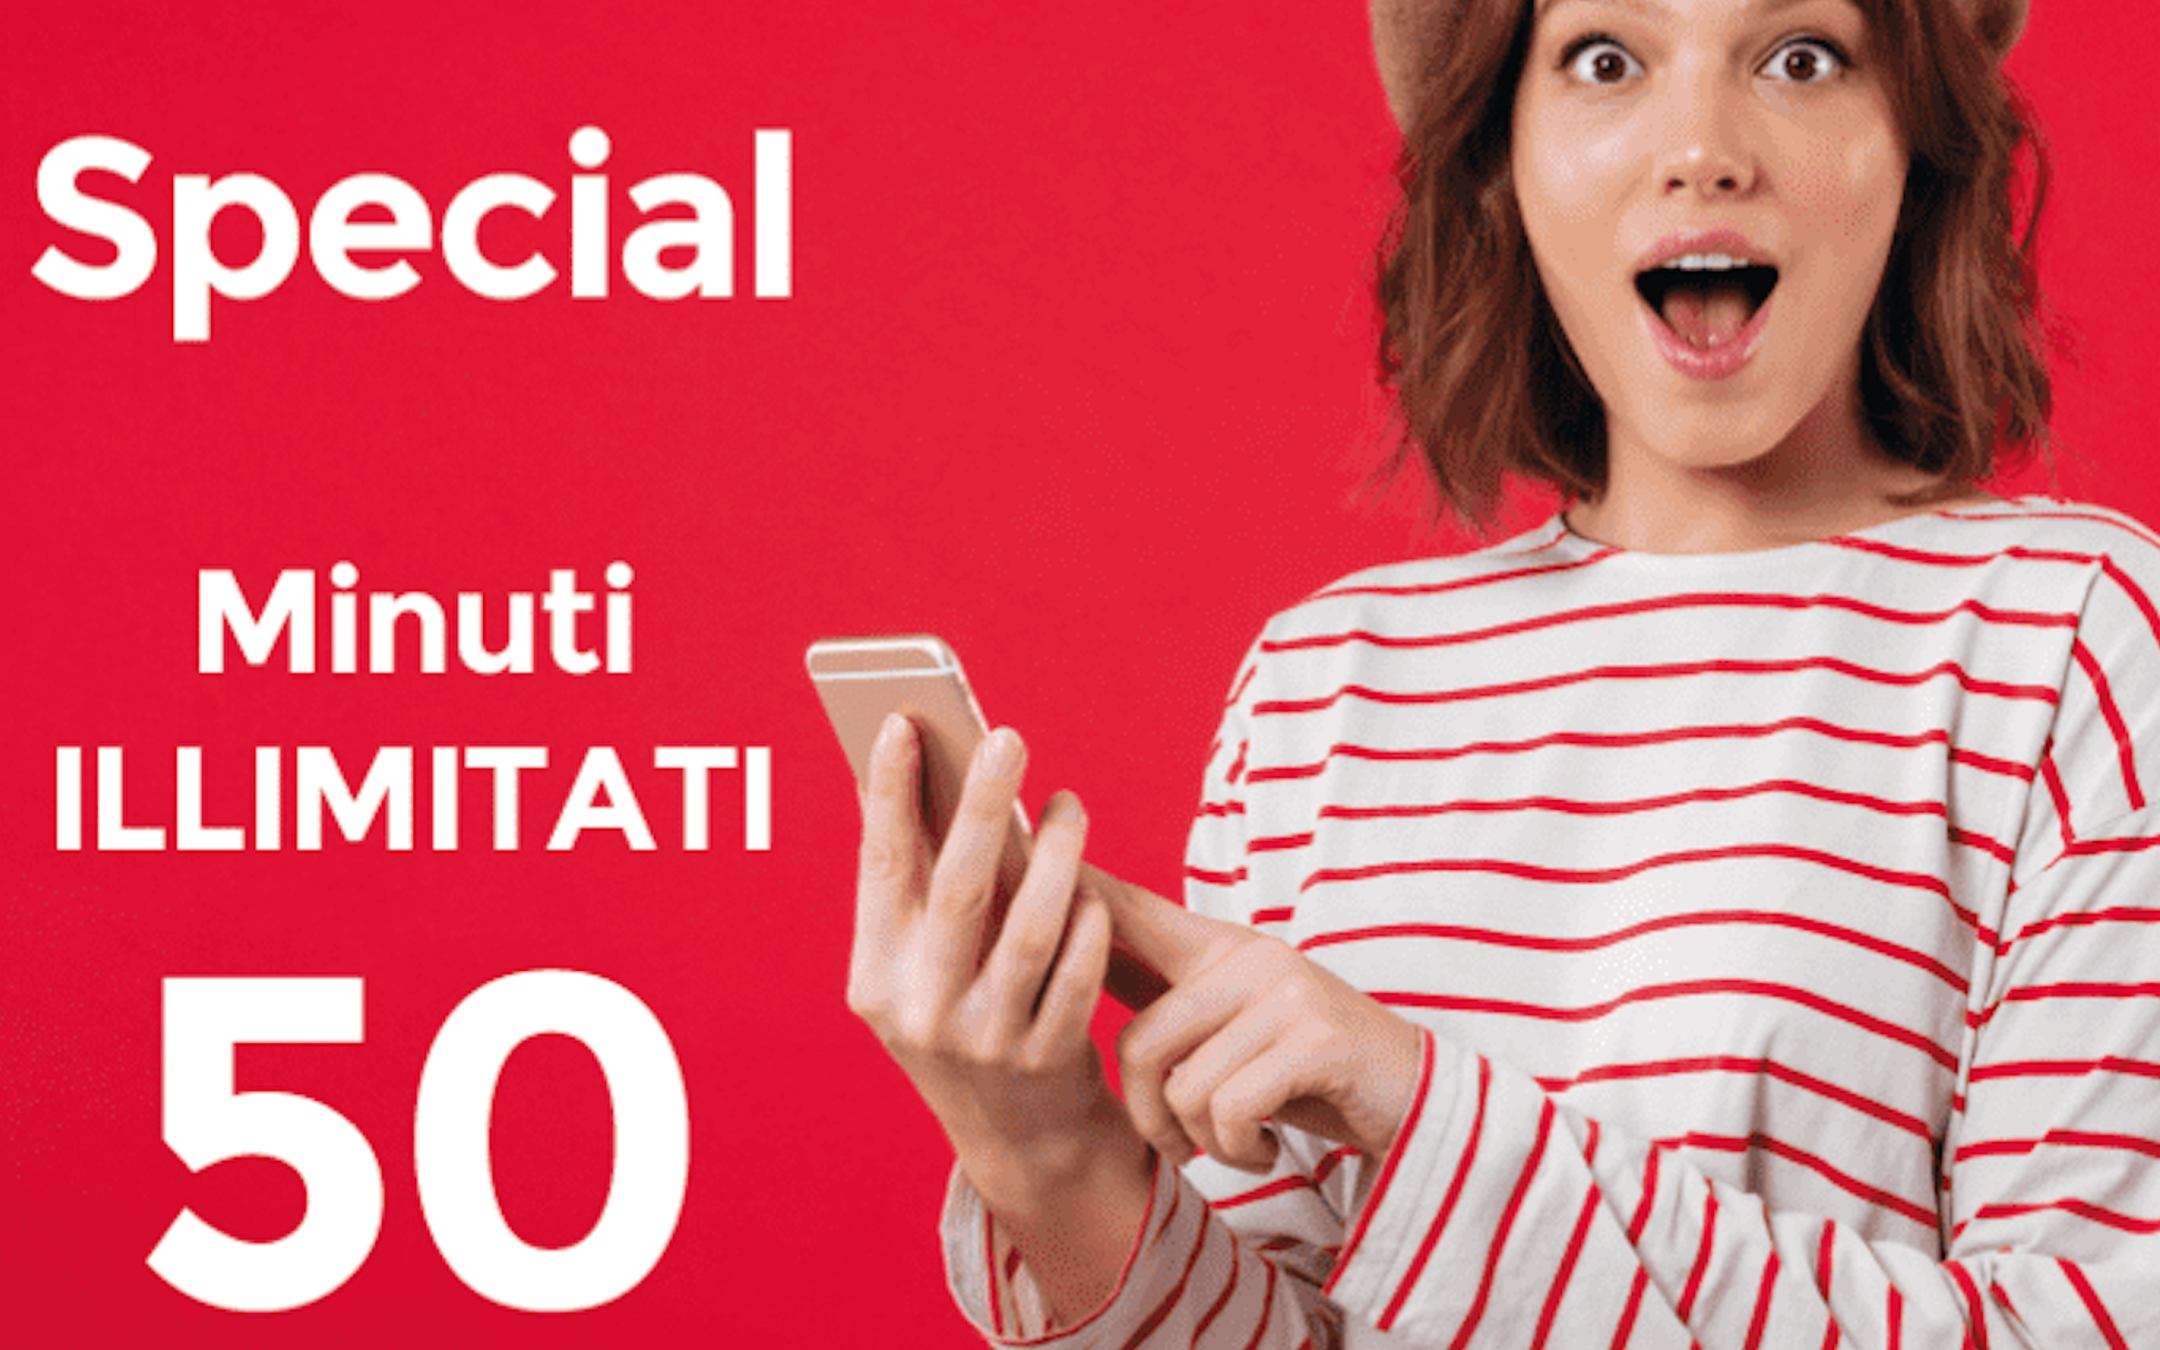 Special Minuti 50 Giga: Promo Vodafone contro TIM